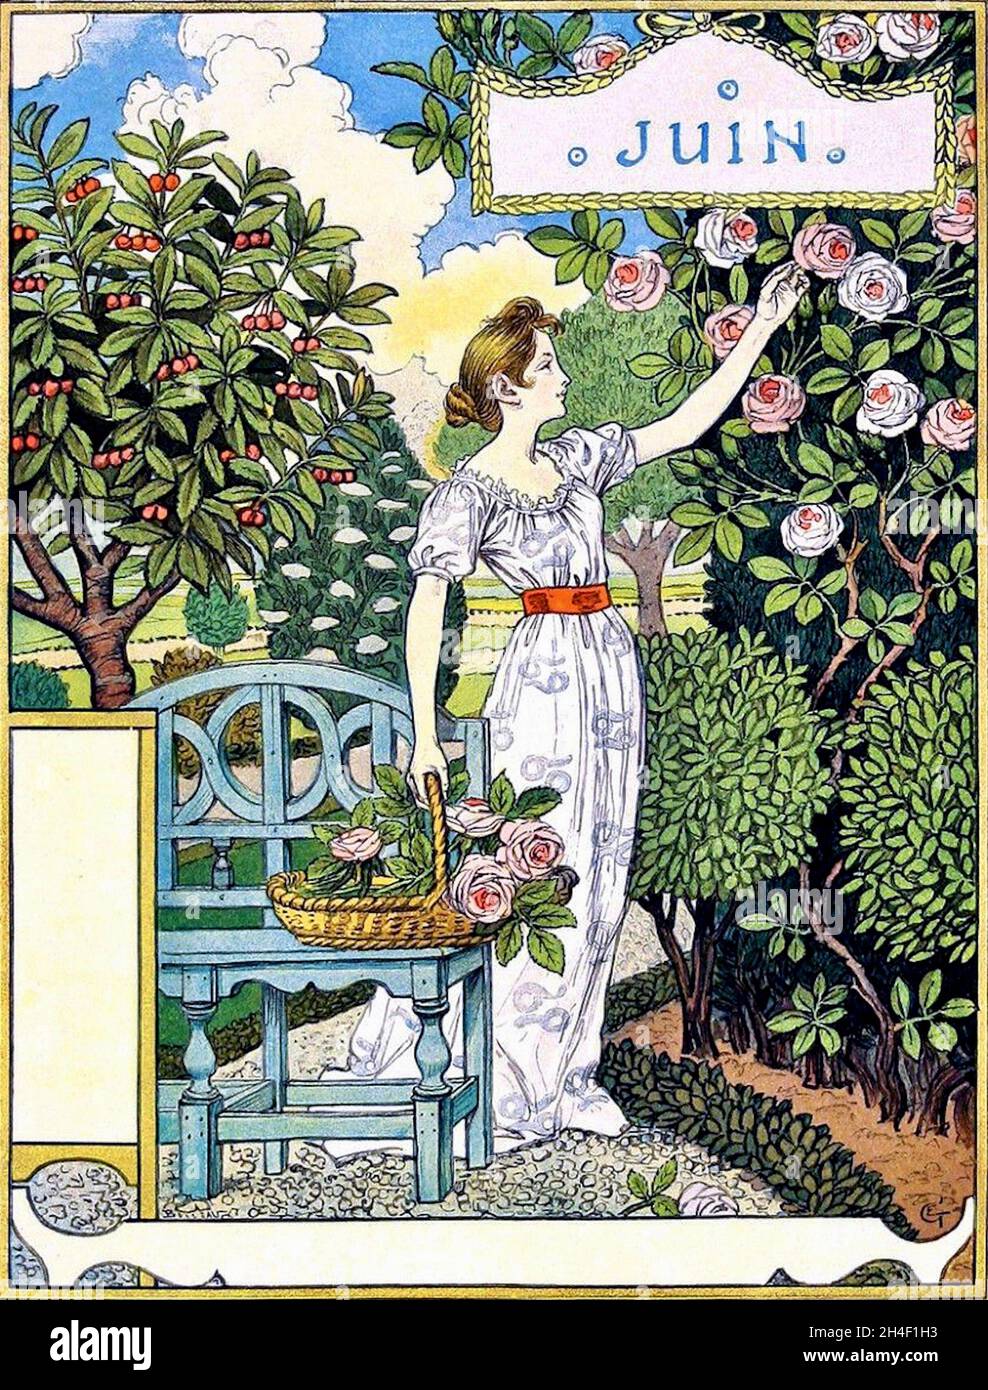 Calendario de Eugène Grasset encargado por el almacén parisino La Belle Jardinière - los meses - junio Foto de stock